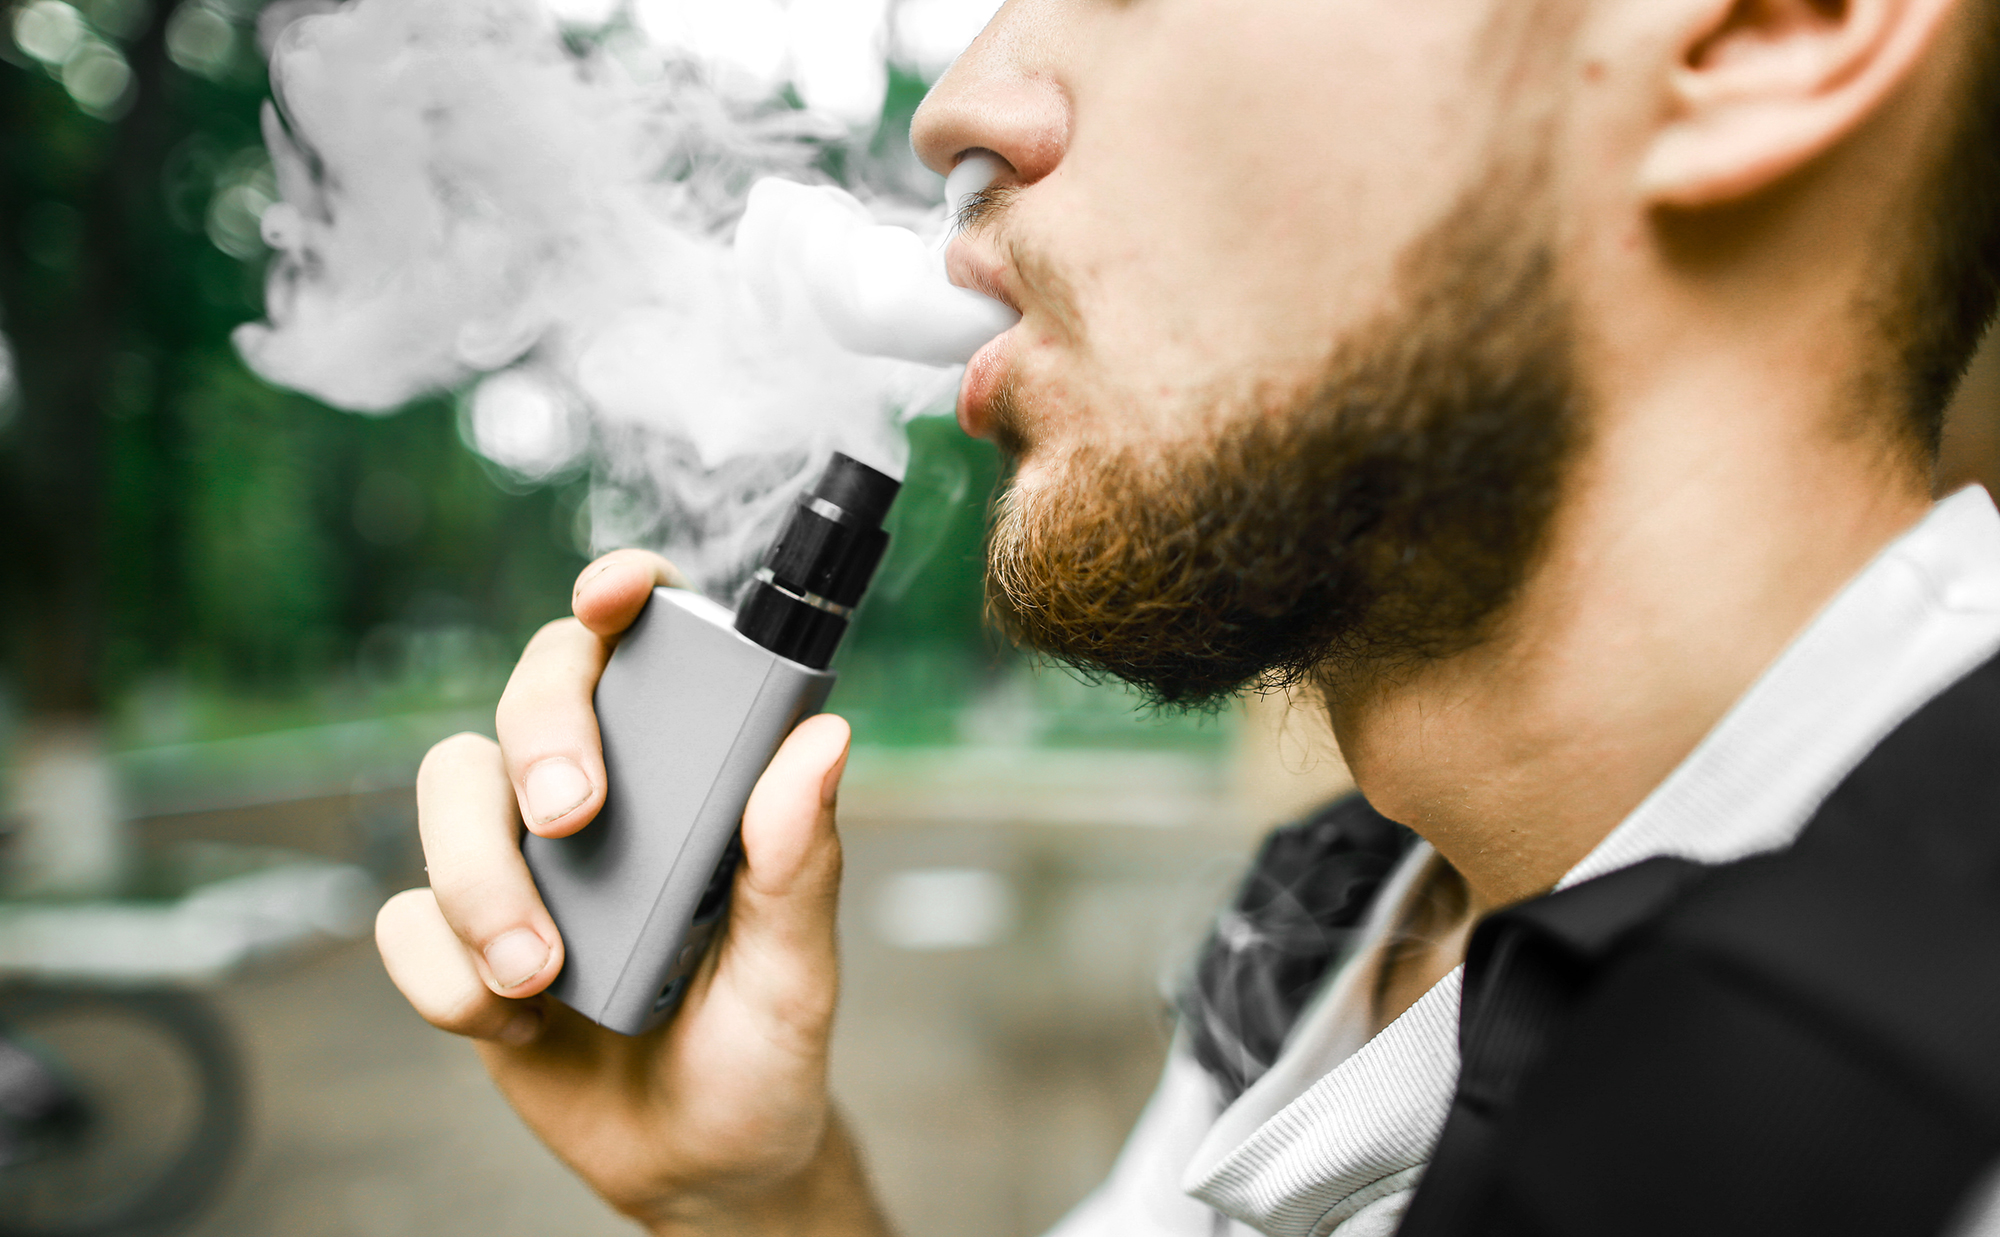 Elektronik Sigara Bağımlılığı Gençlerde Hızla Artıyor: Sağlık Uzmanları Uyarıyor